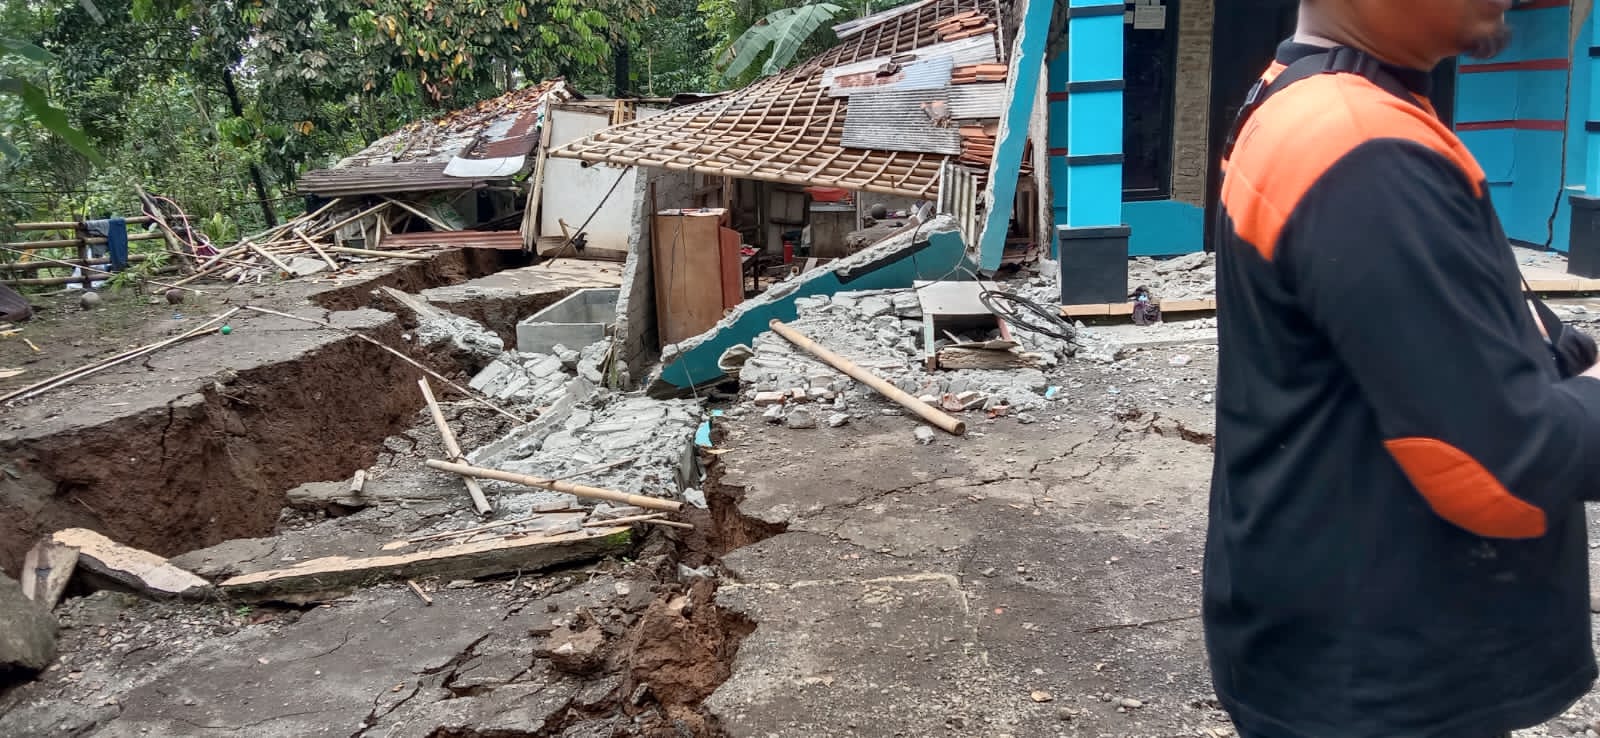 Di Banyumas, Dalam Dua Hari Tercatat 80 Titik Longsor dan 10 Banjir Luapan, Ini Data Lengkap Desa Kena Bencana